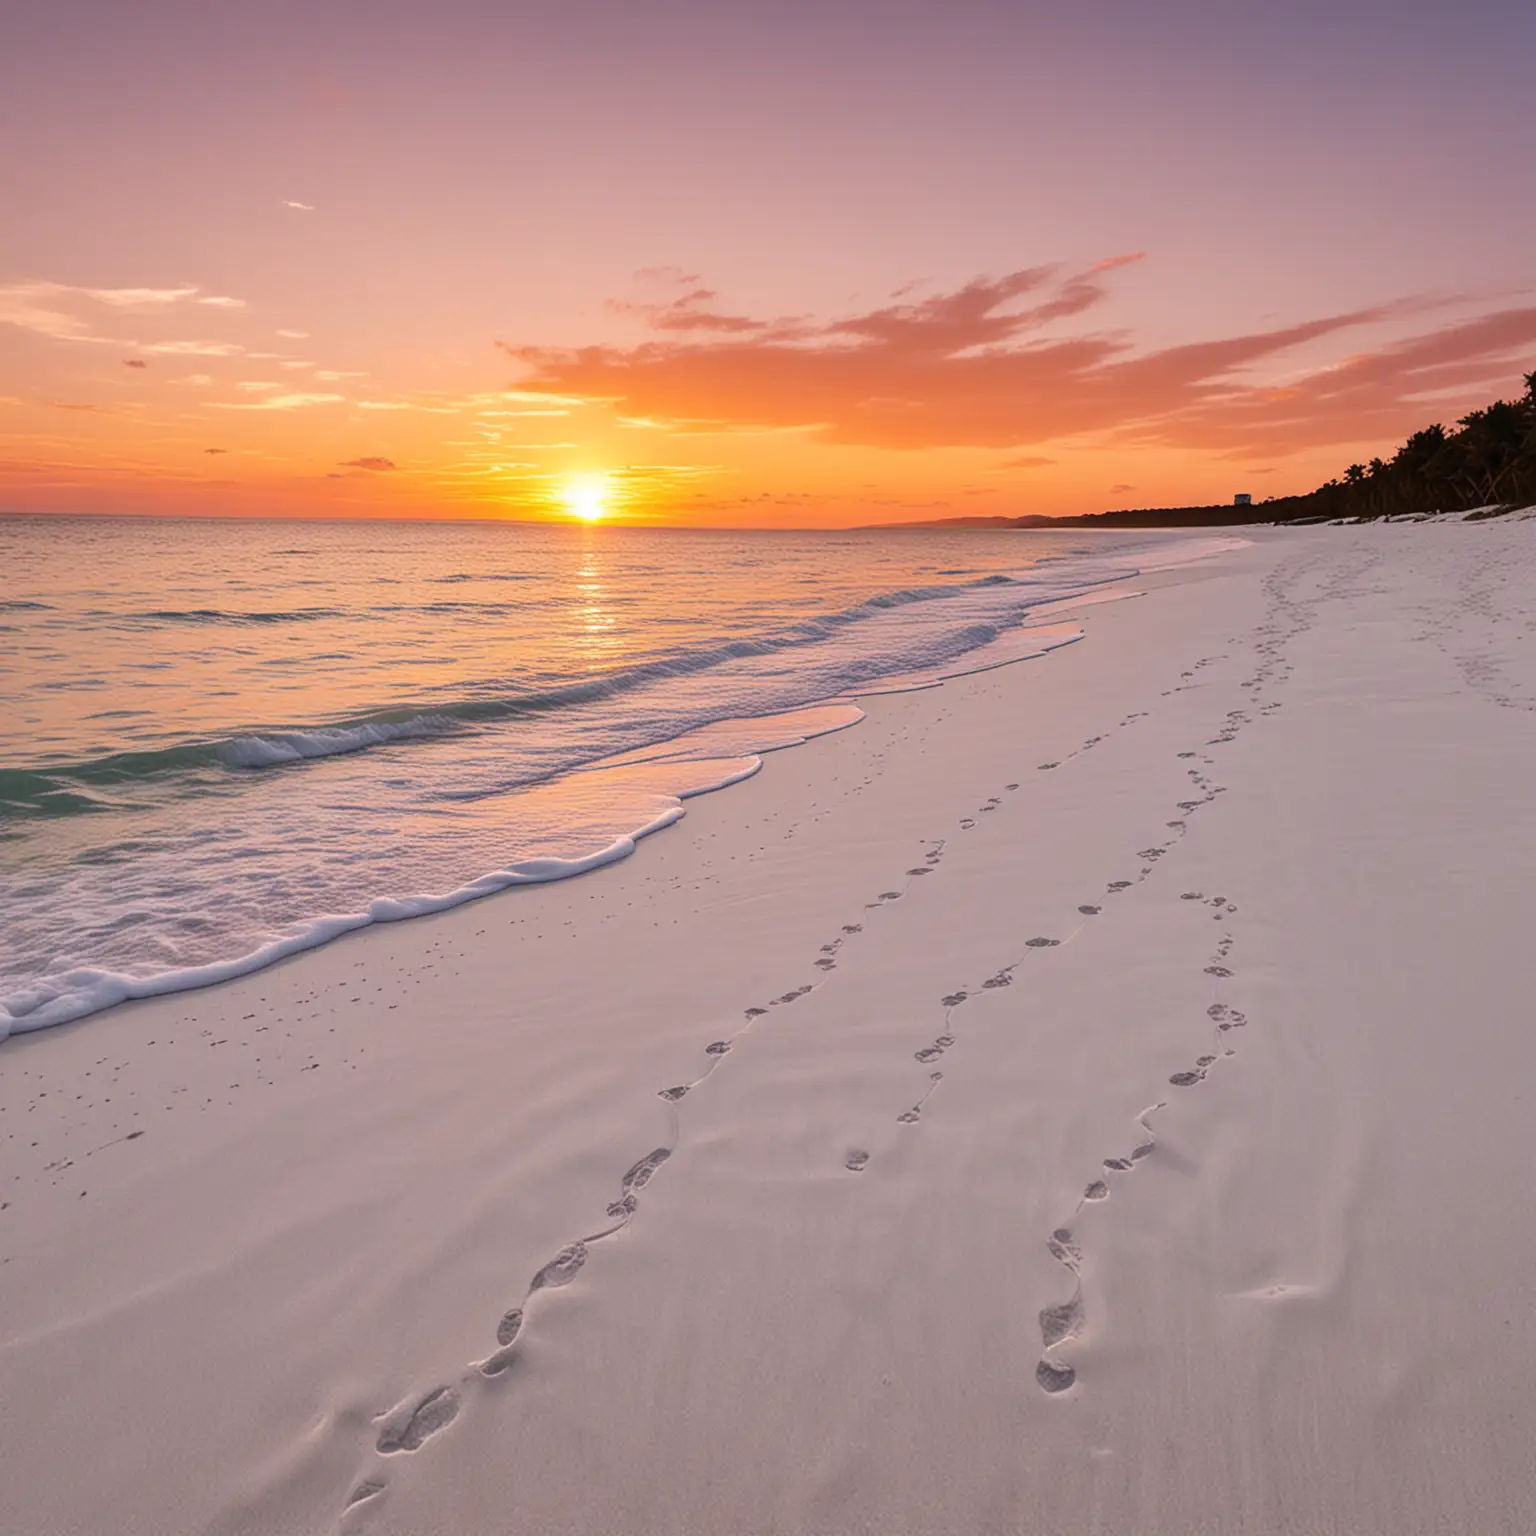 pure white sand beach with orange sunset skies
